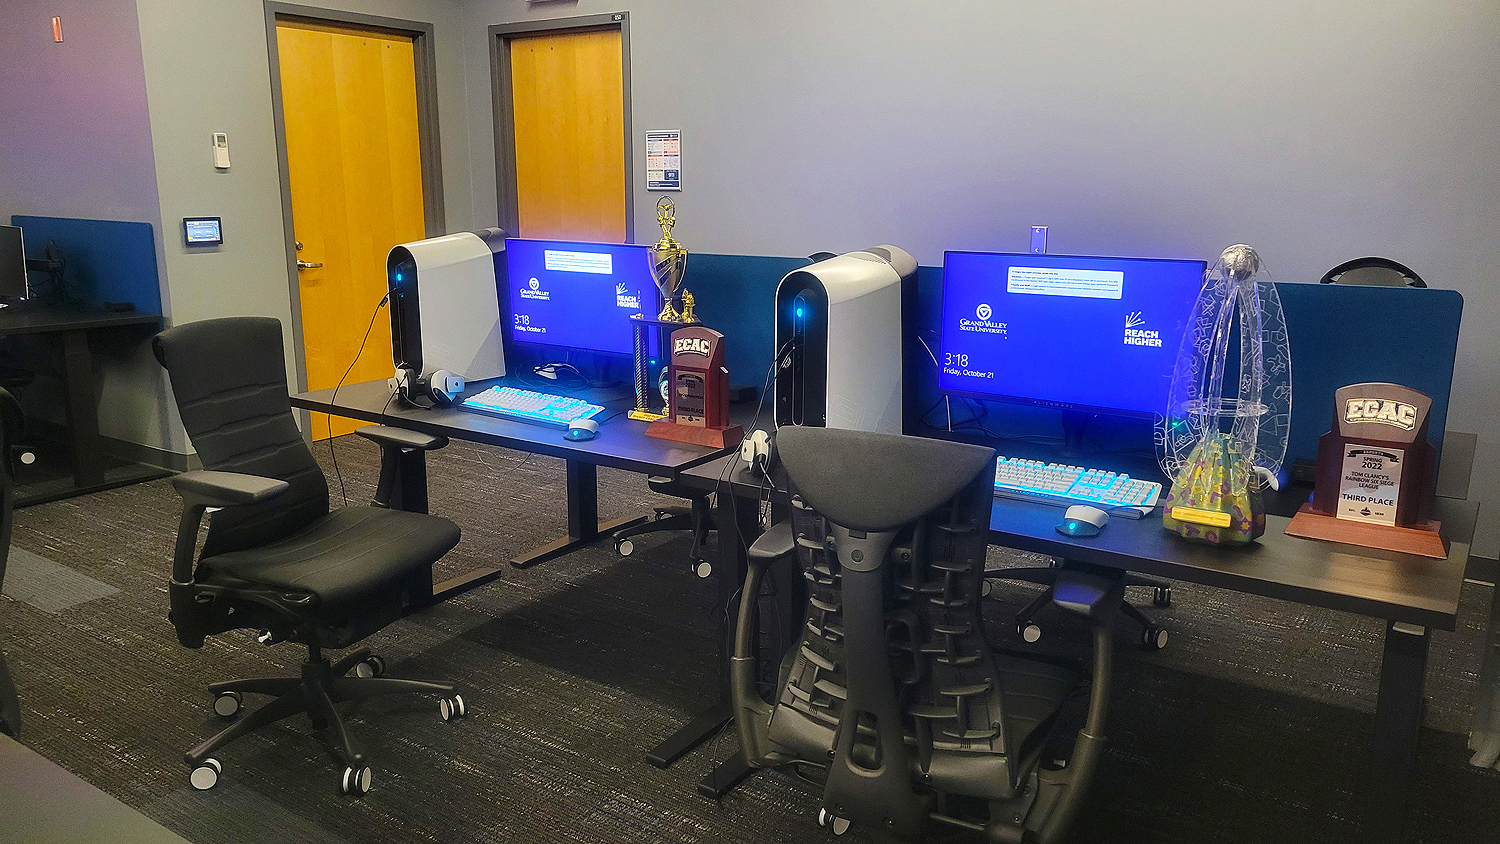 Pour le Laker Esports Center, la GVSU s'est associée au fabricant de meubles Herman Miller pour les tables, les fauteuils de gaming Logitech, et les accessoires.